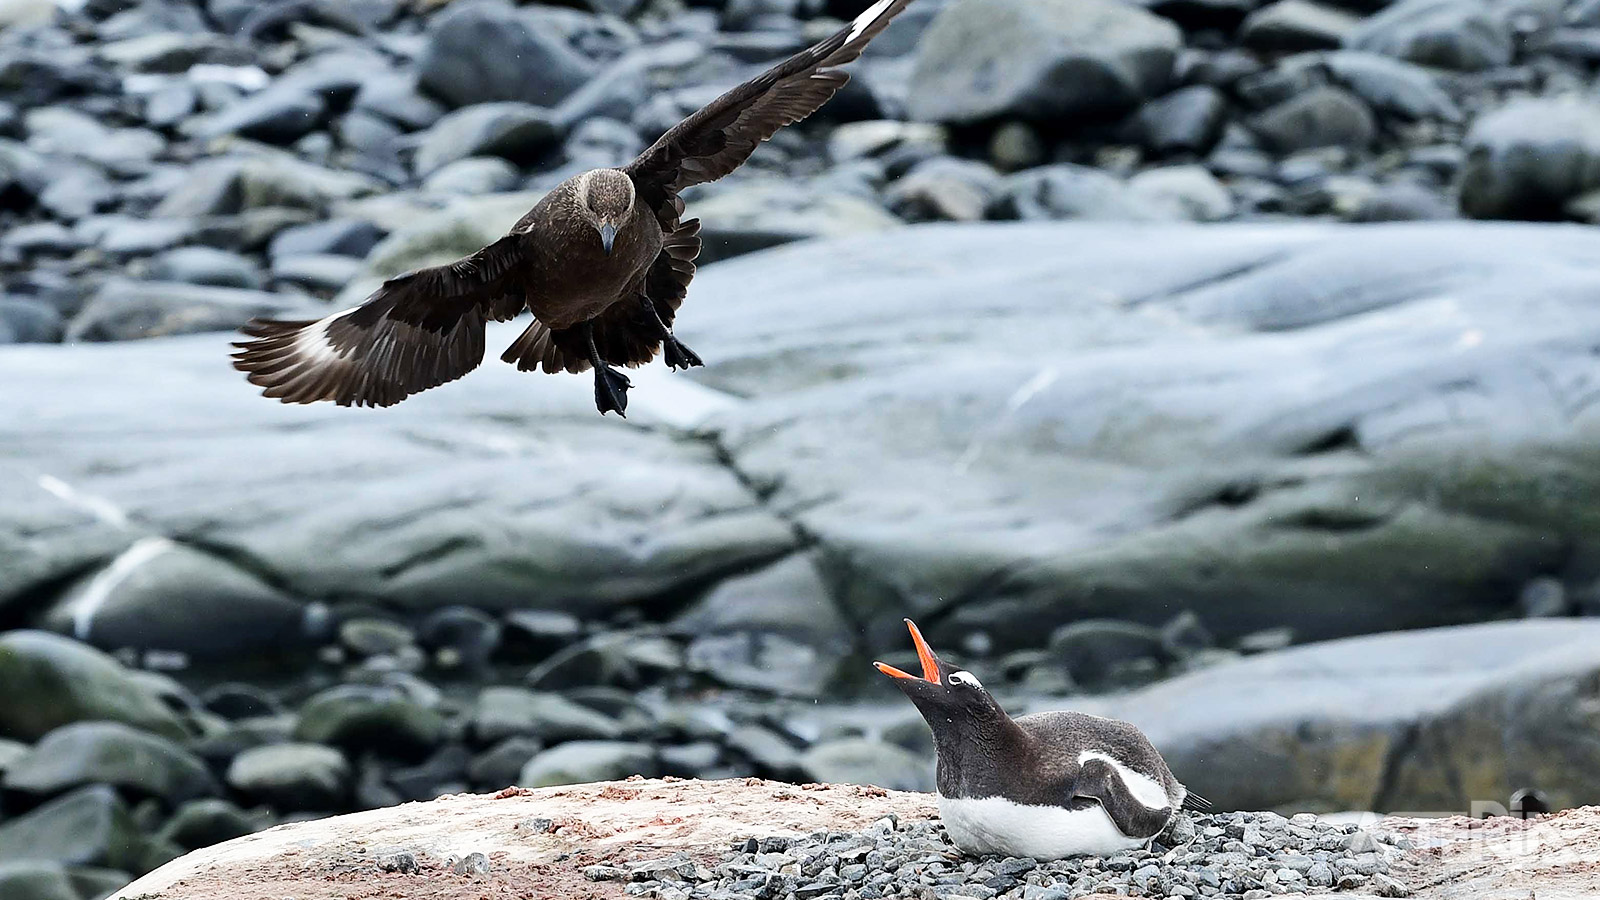 Skua’s of Subantarctische Grote Jagers zijn dol op pinguïneieren en vormen dan ook één van de grootste vijanden van de pinguïn